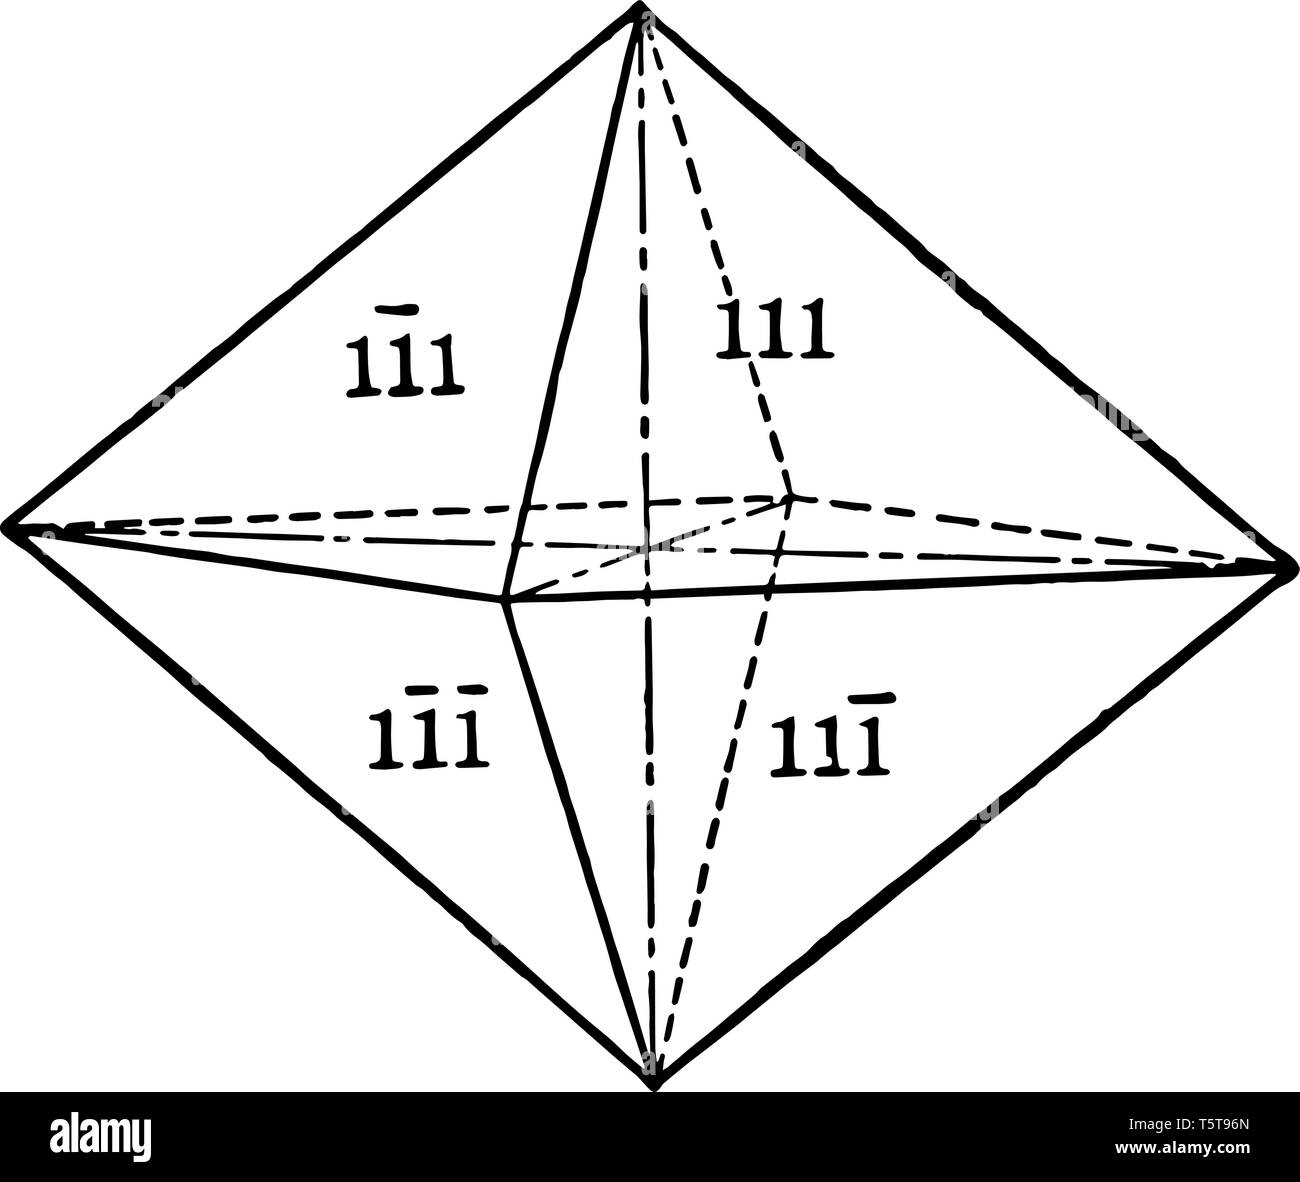 Das Bild zeigt ein Rhombisch Pyramide mit acht dreieckige Flächen, die jeweils die drei kristallographischen Achsen, vintage Strichzeichnung Kreuze oder en Stock Vektor